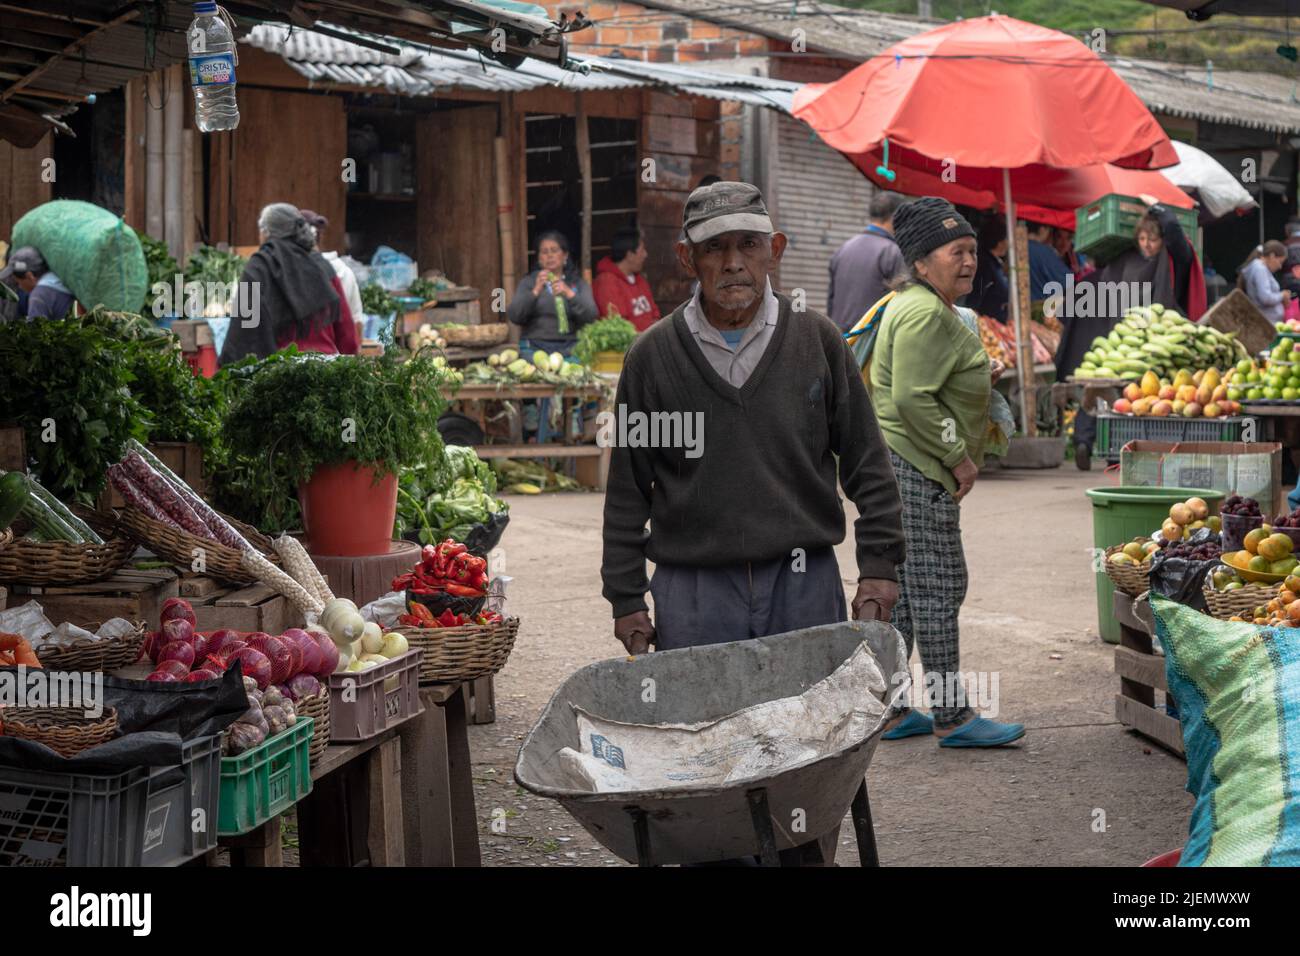 Campesino adulto mayor que trabaja en el mercado rural. Pasto, Nariño. Foto de stock